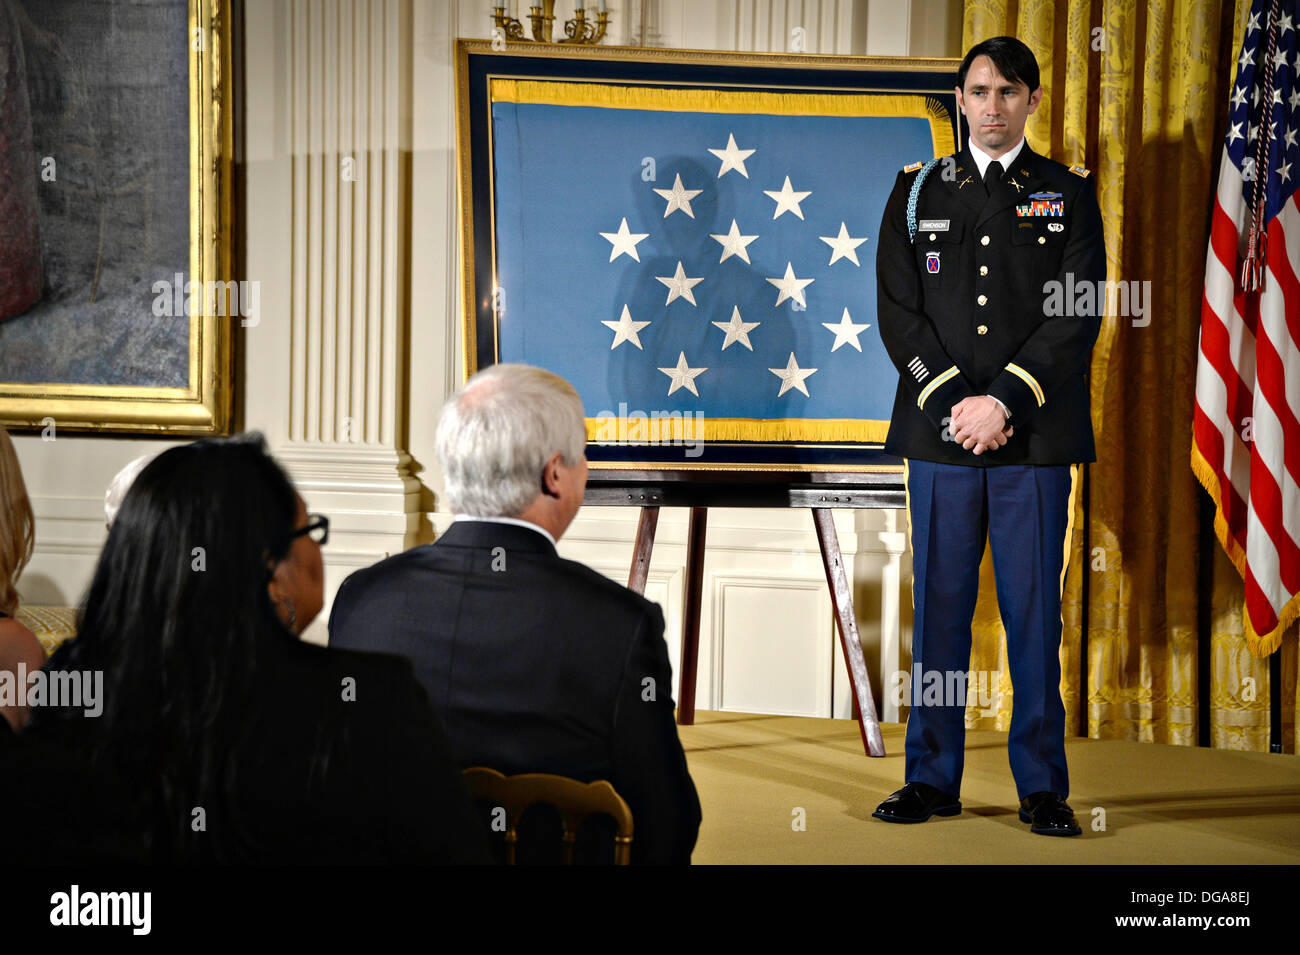 El capitán del ejército estadounidense William D. Swenson durante la ceremonia de entrega de la Medalla de Honor en el East Room de la Casa Blanca el 15 de octubre de 2013 en Washington, DC. La Medalla de Honor de la nación es el más alto honor militar. Foto de stock